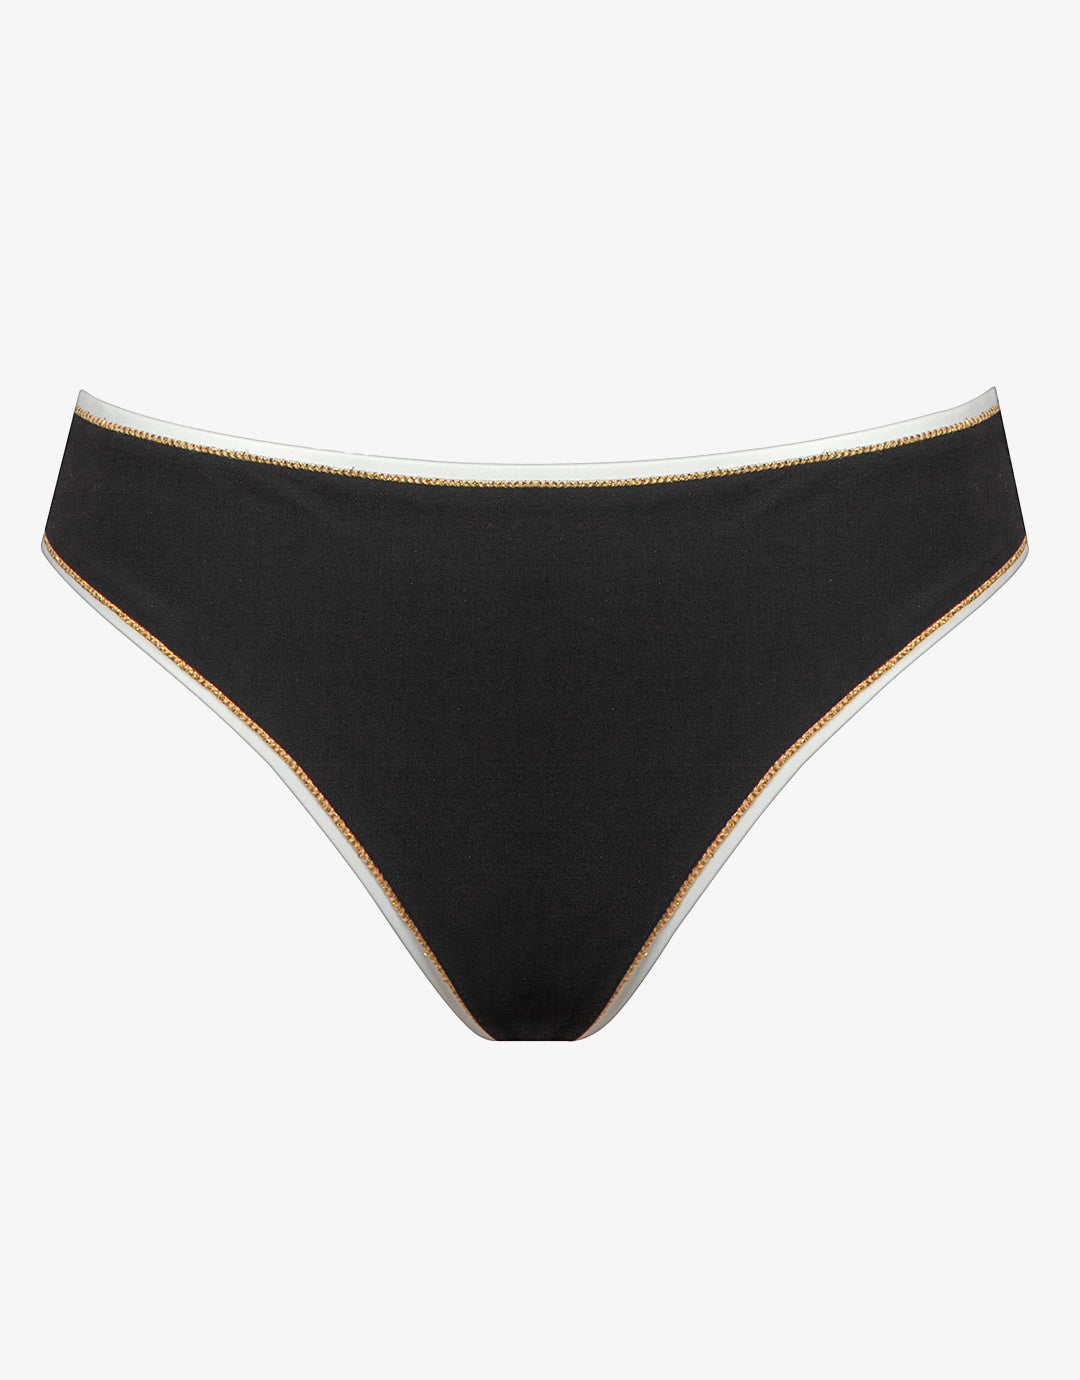 Metrics Bikini Pant - Black White and Gold - Simply Beach UK